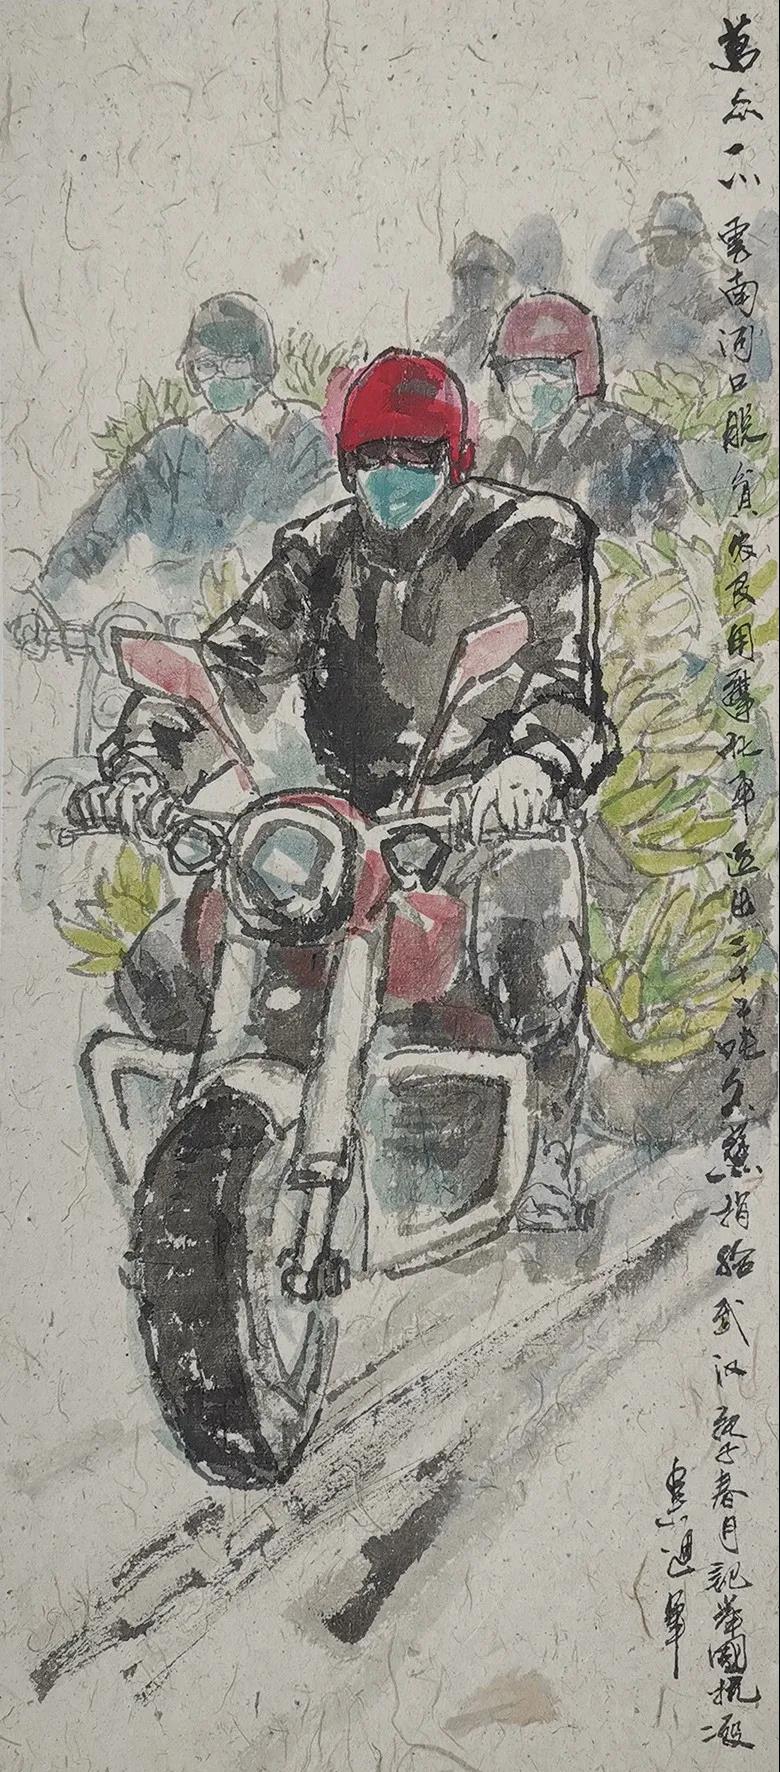 吴迅 万众一心·云南河口脱贫农民用摩托车运出二十二吨香蕉捐给武汉 中国画